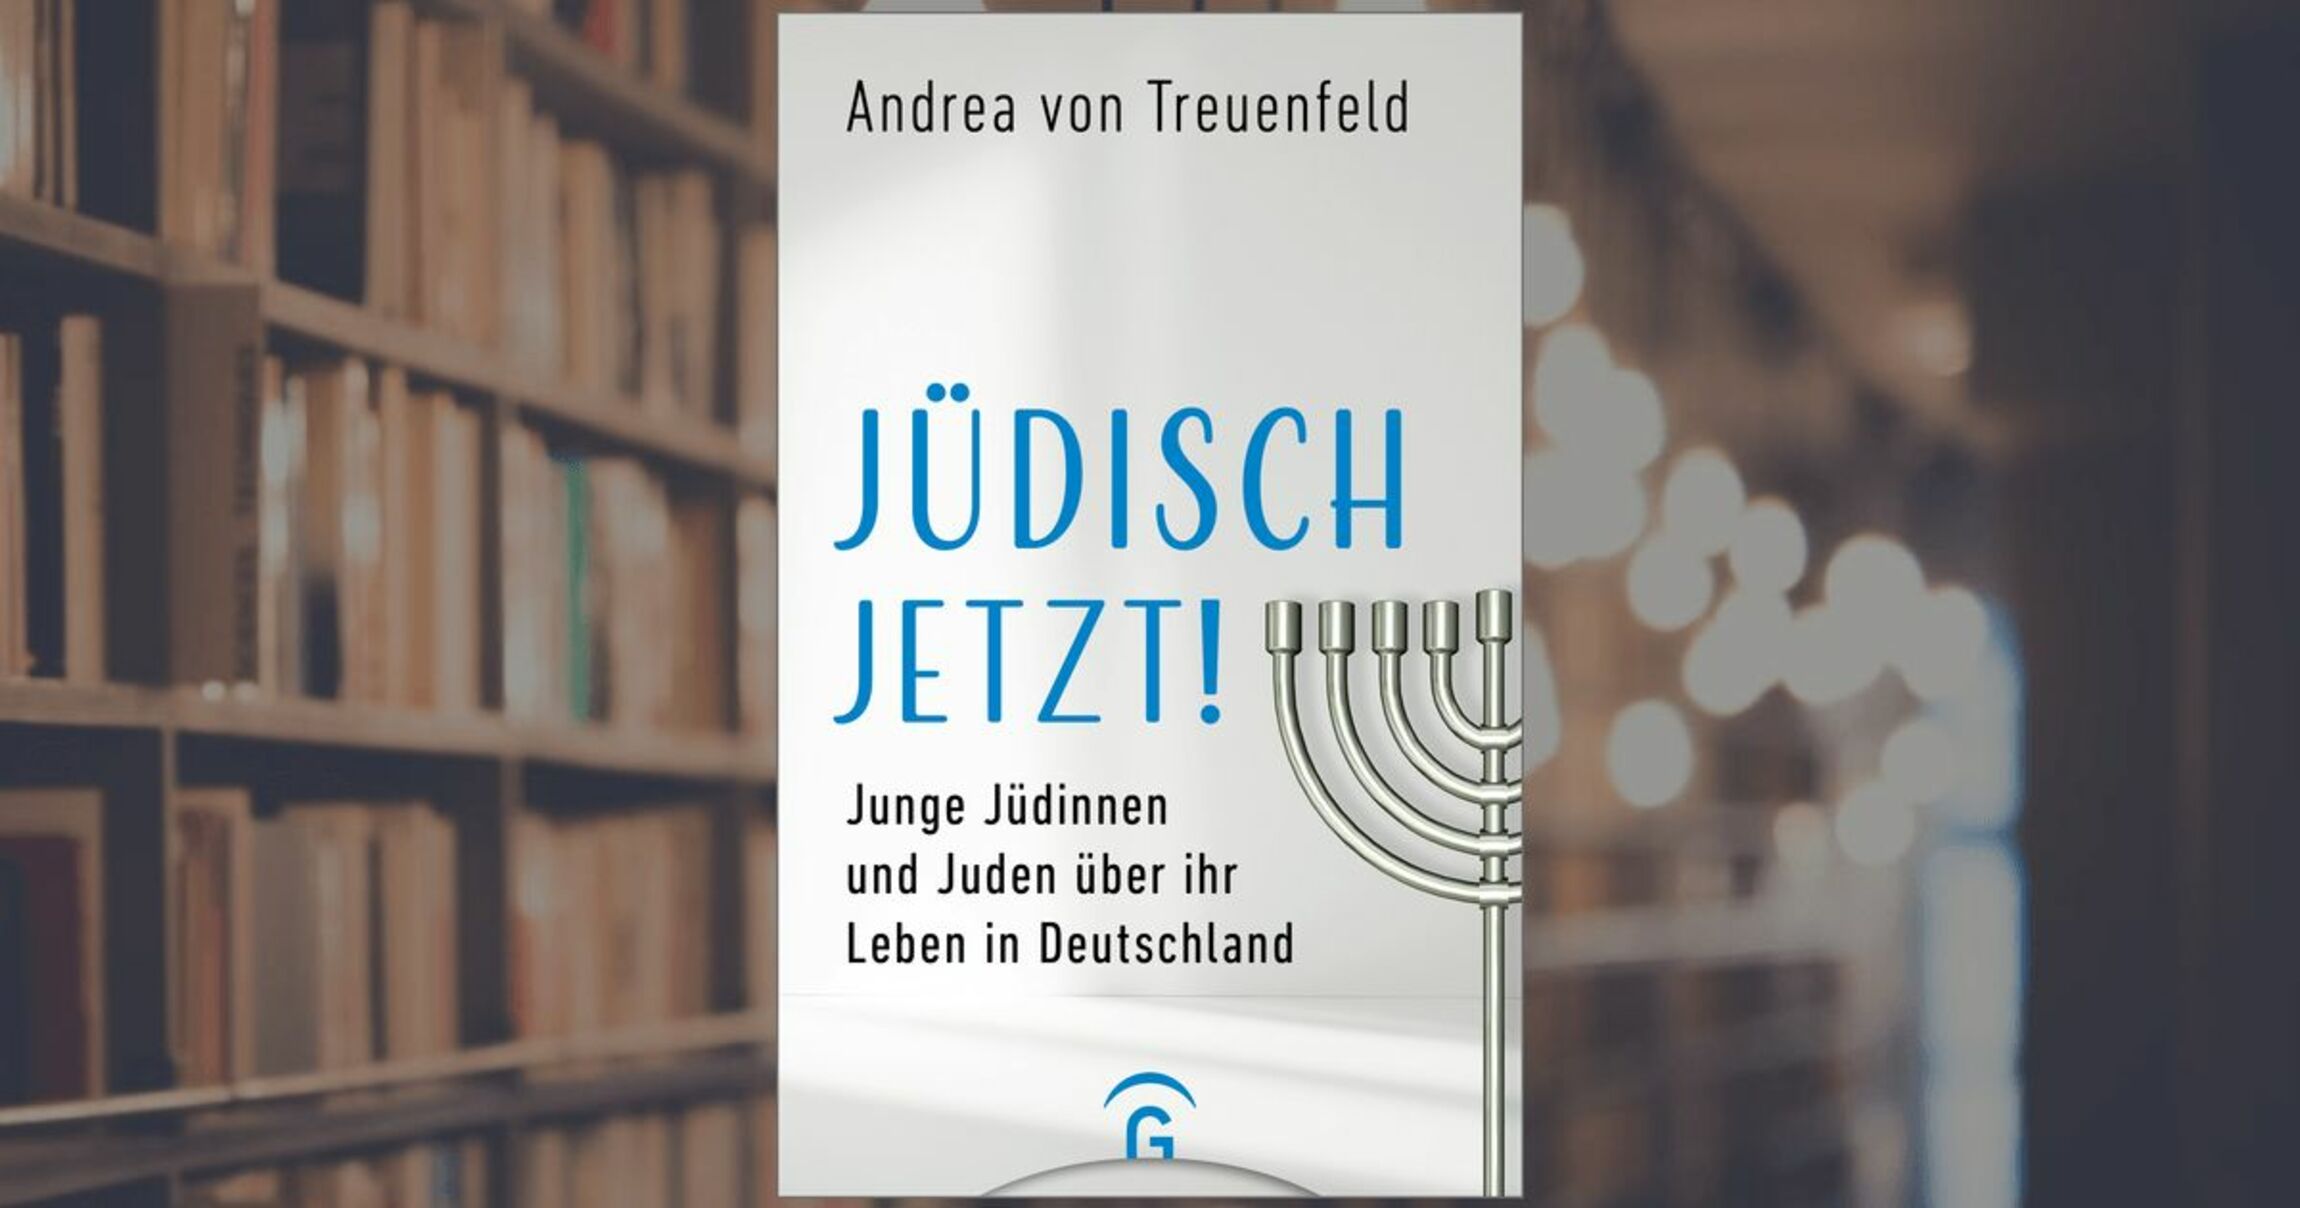 Die evangelischen Kirchen in Niedersachsen belohnen besondere Abitur-Leistungen im Fach Religion mit einem Buchpreis.